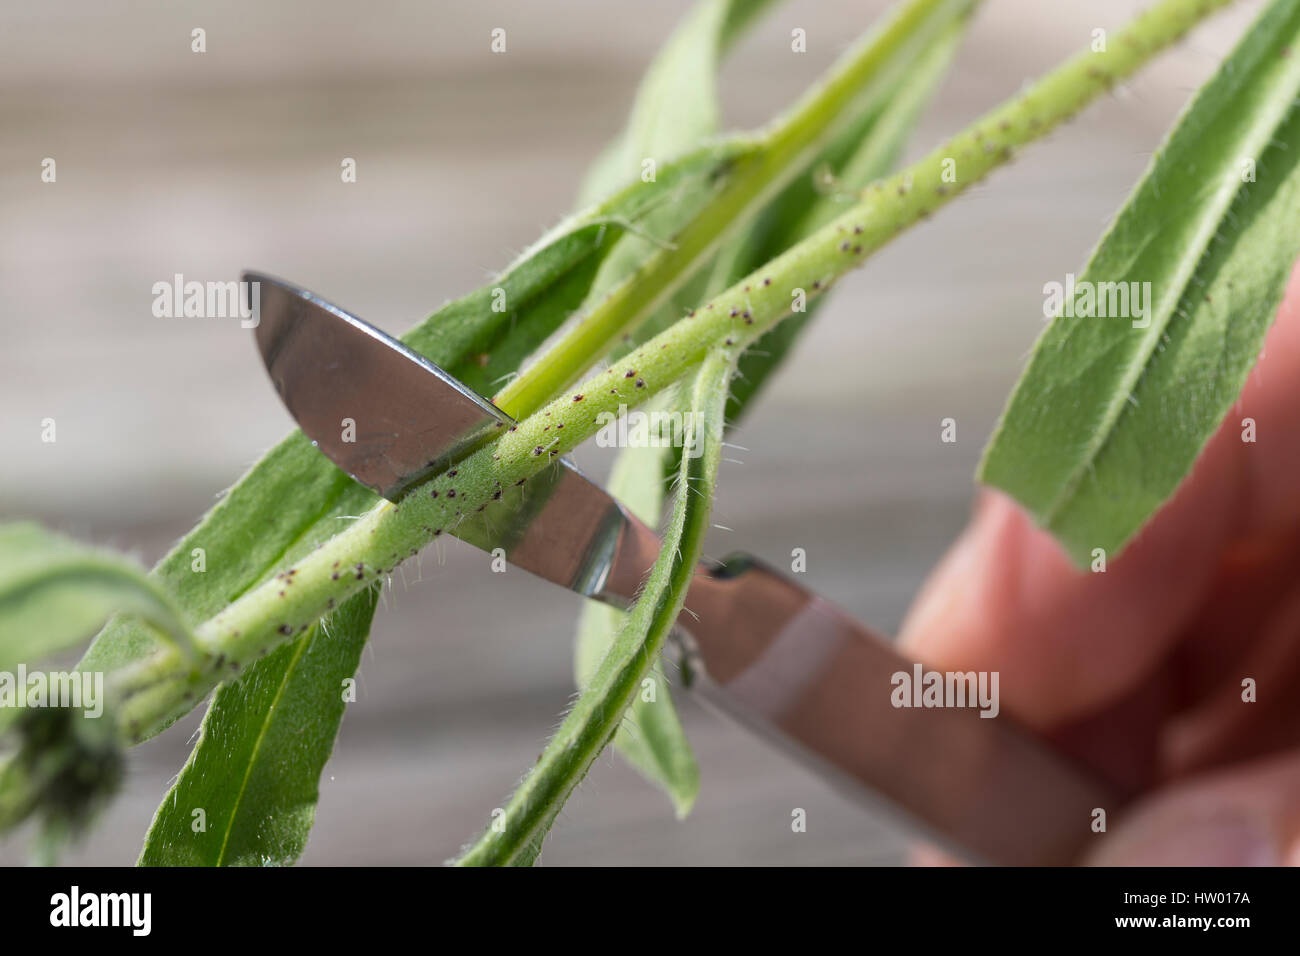 Pflanzen aufschneiden, dickere Pflanzenteile werden aufgeschnitten, um besser gepresst werden zu können, Stengel, Stängel vom Natternkopf wird mit Ska Foto Stock